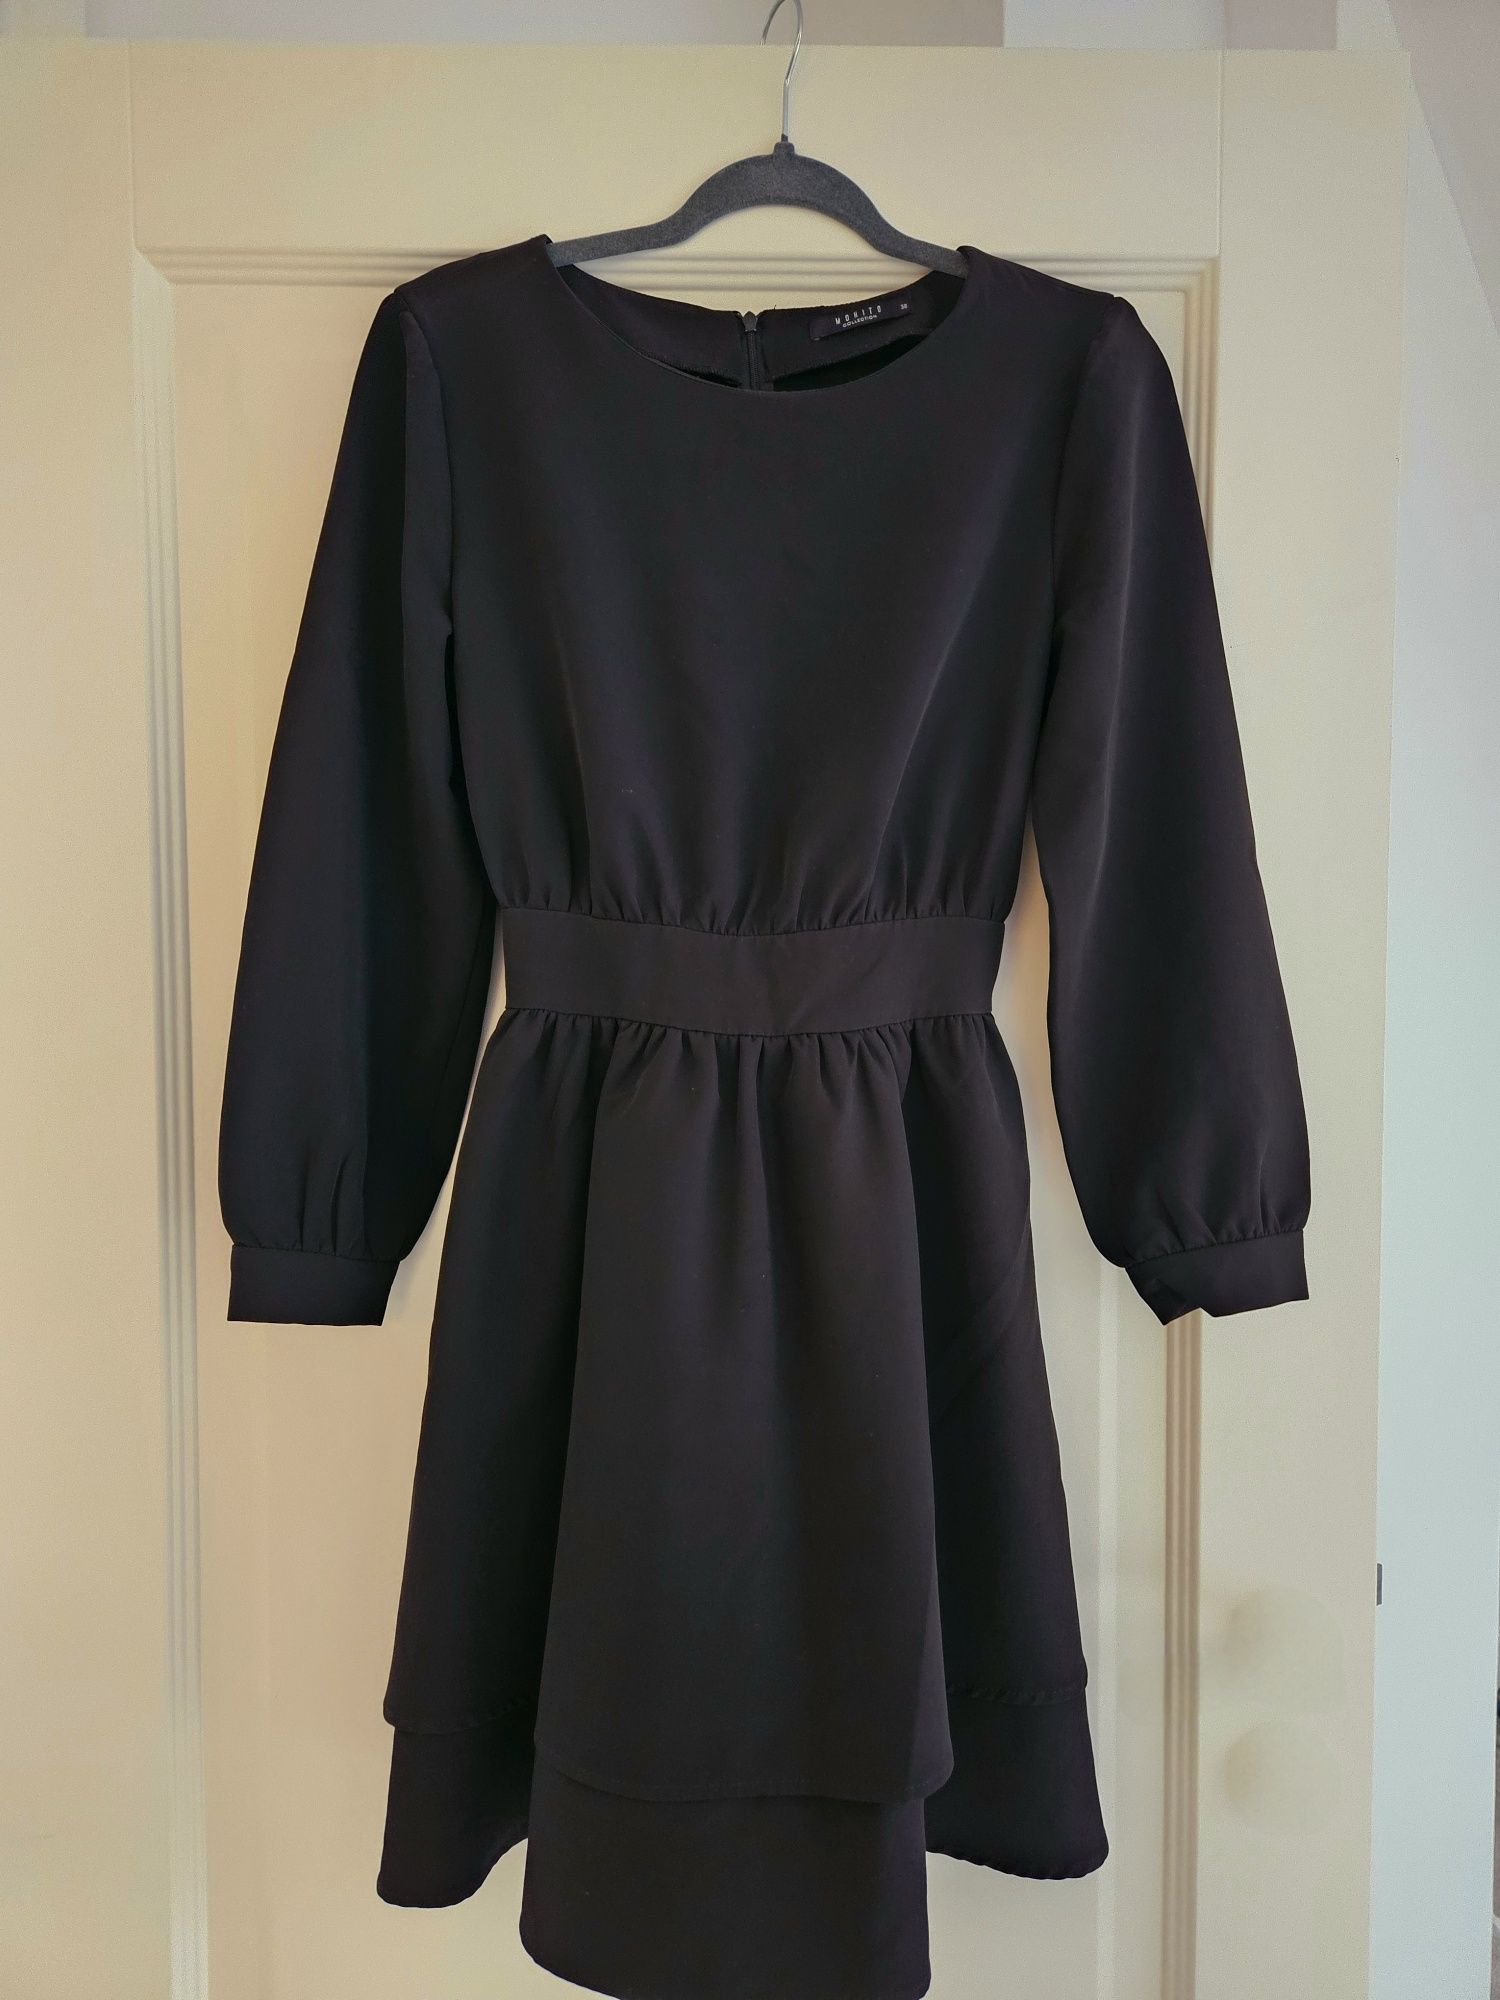 Czarna sukienka Mohito rozmiar M.